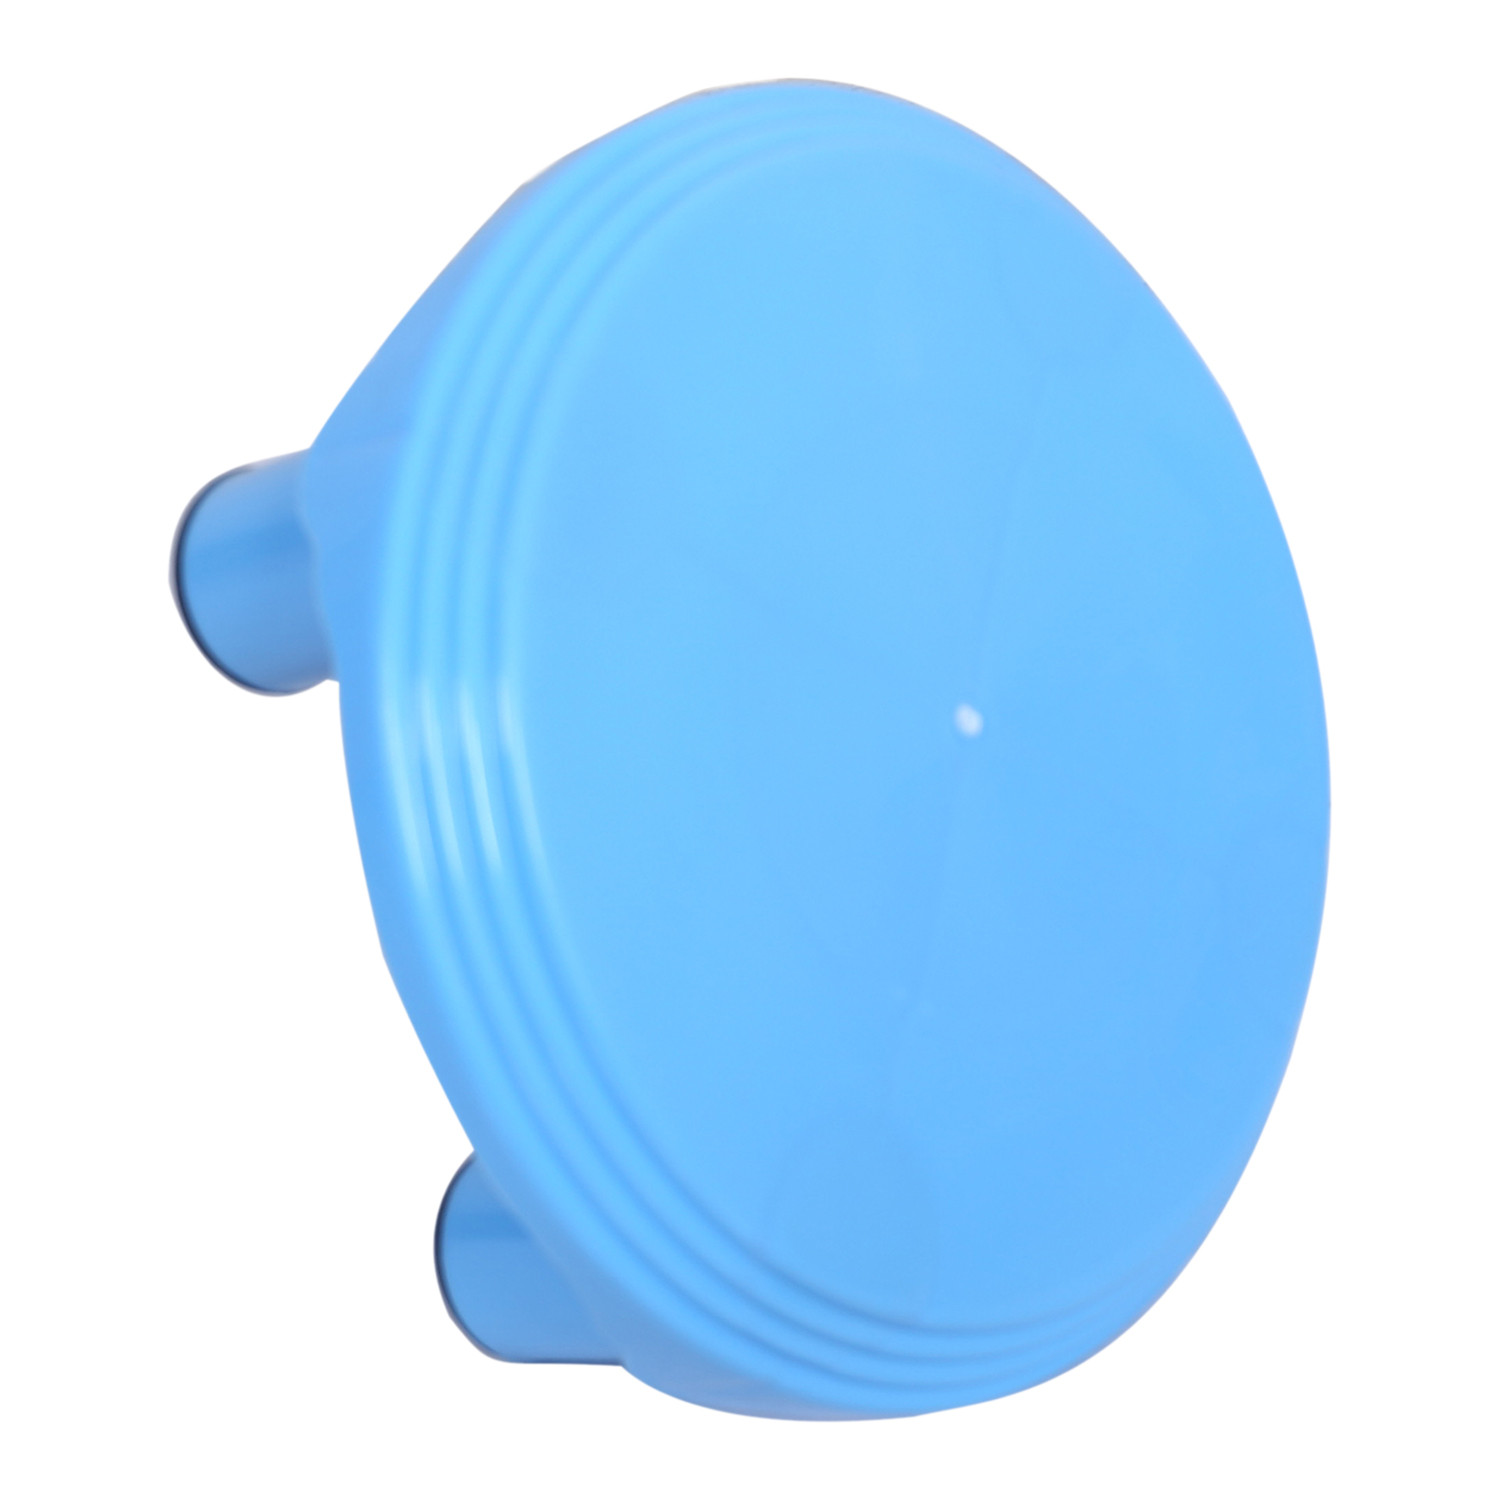 Kuber Industries Bathroom Stool|Plastic Stool|Anti-slip Bathing Stool|Stool for Senior Citizen|Patla for Bathroom|(Sky Blue)